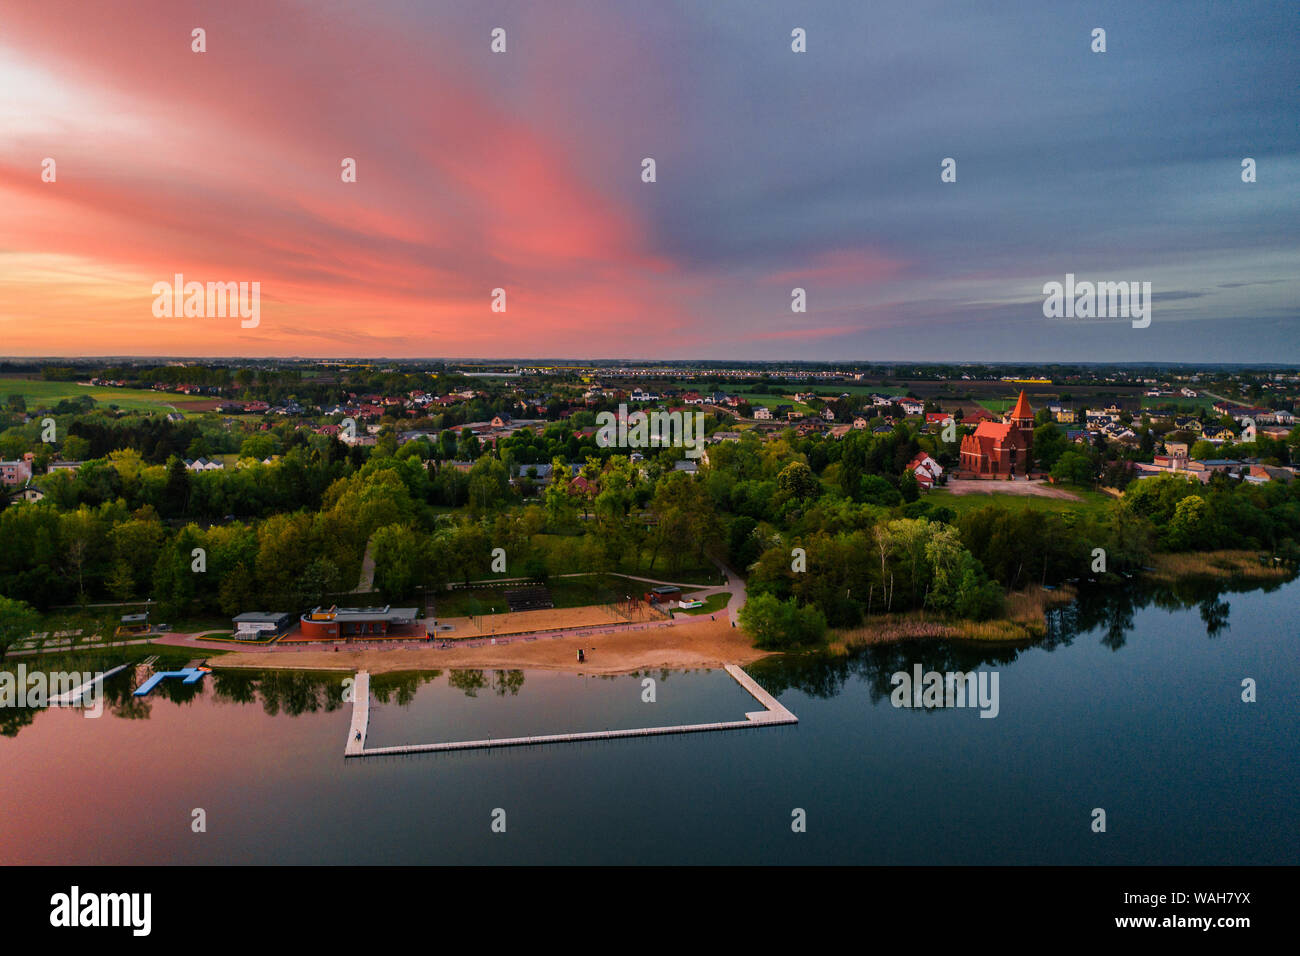 Antenne drone Fotografie von einem See Landschaft bei Sonnenuntergang. Wunderschöne und ruhige ländliche Landschaft. Stockfoto